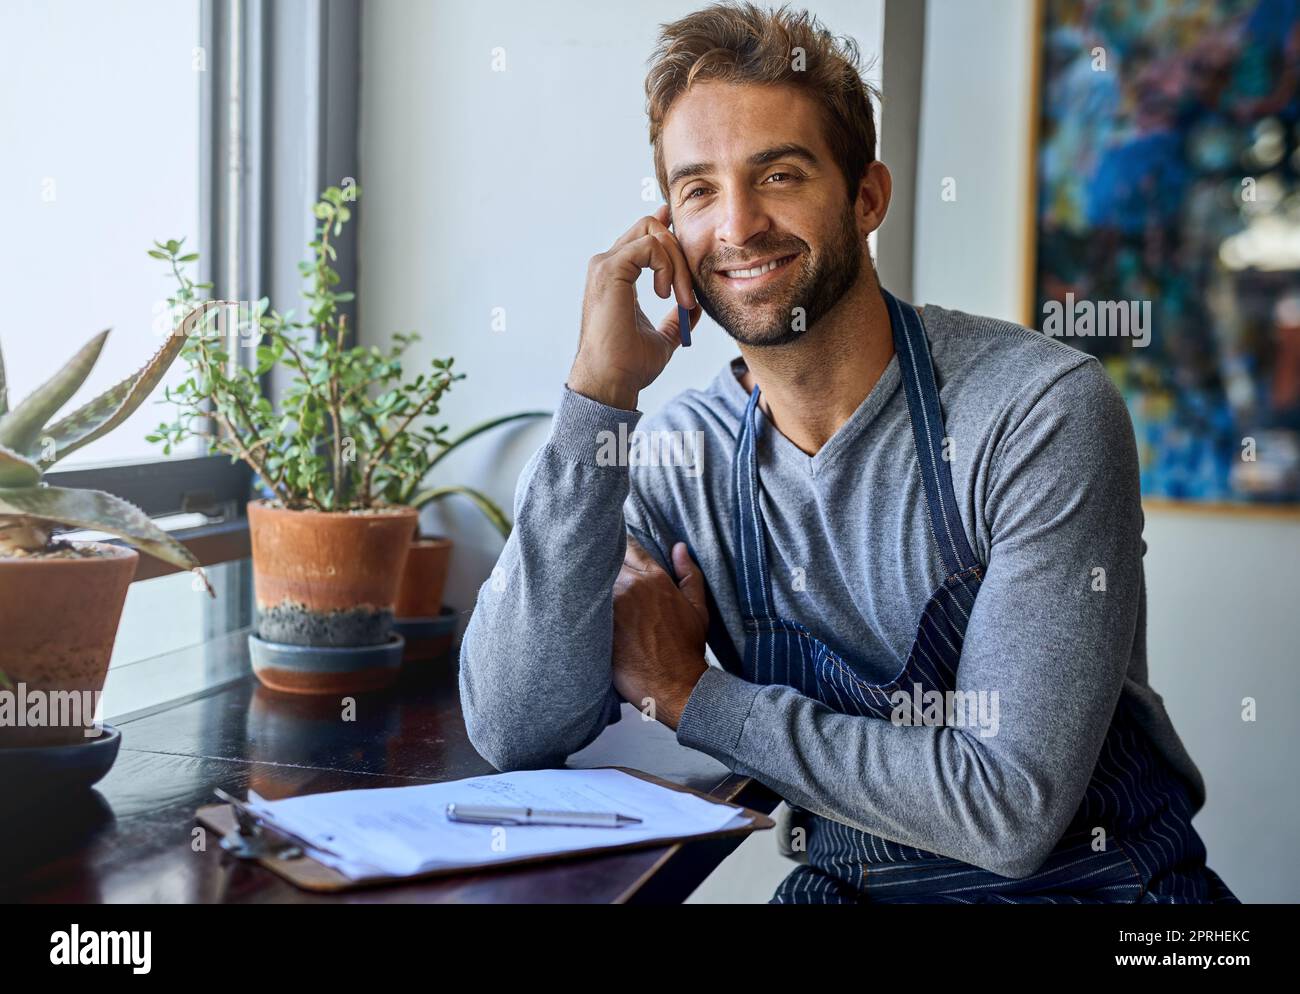 Barista und Geschäftseigentümer zusammen. Ein hübscher junger Barista, der ein Mobiltelefon benutzt, während er in seinem Coffee Shop arbeitet. Stockfoto